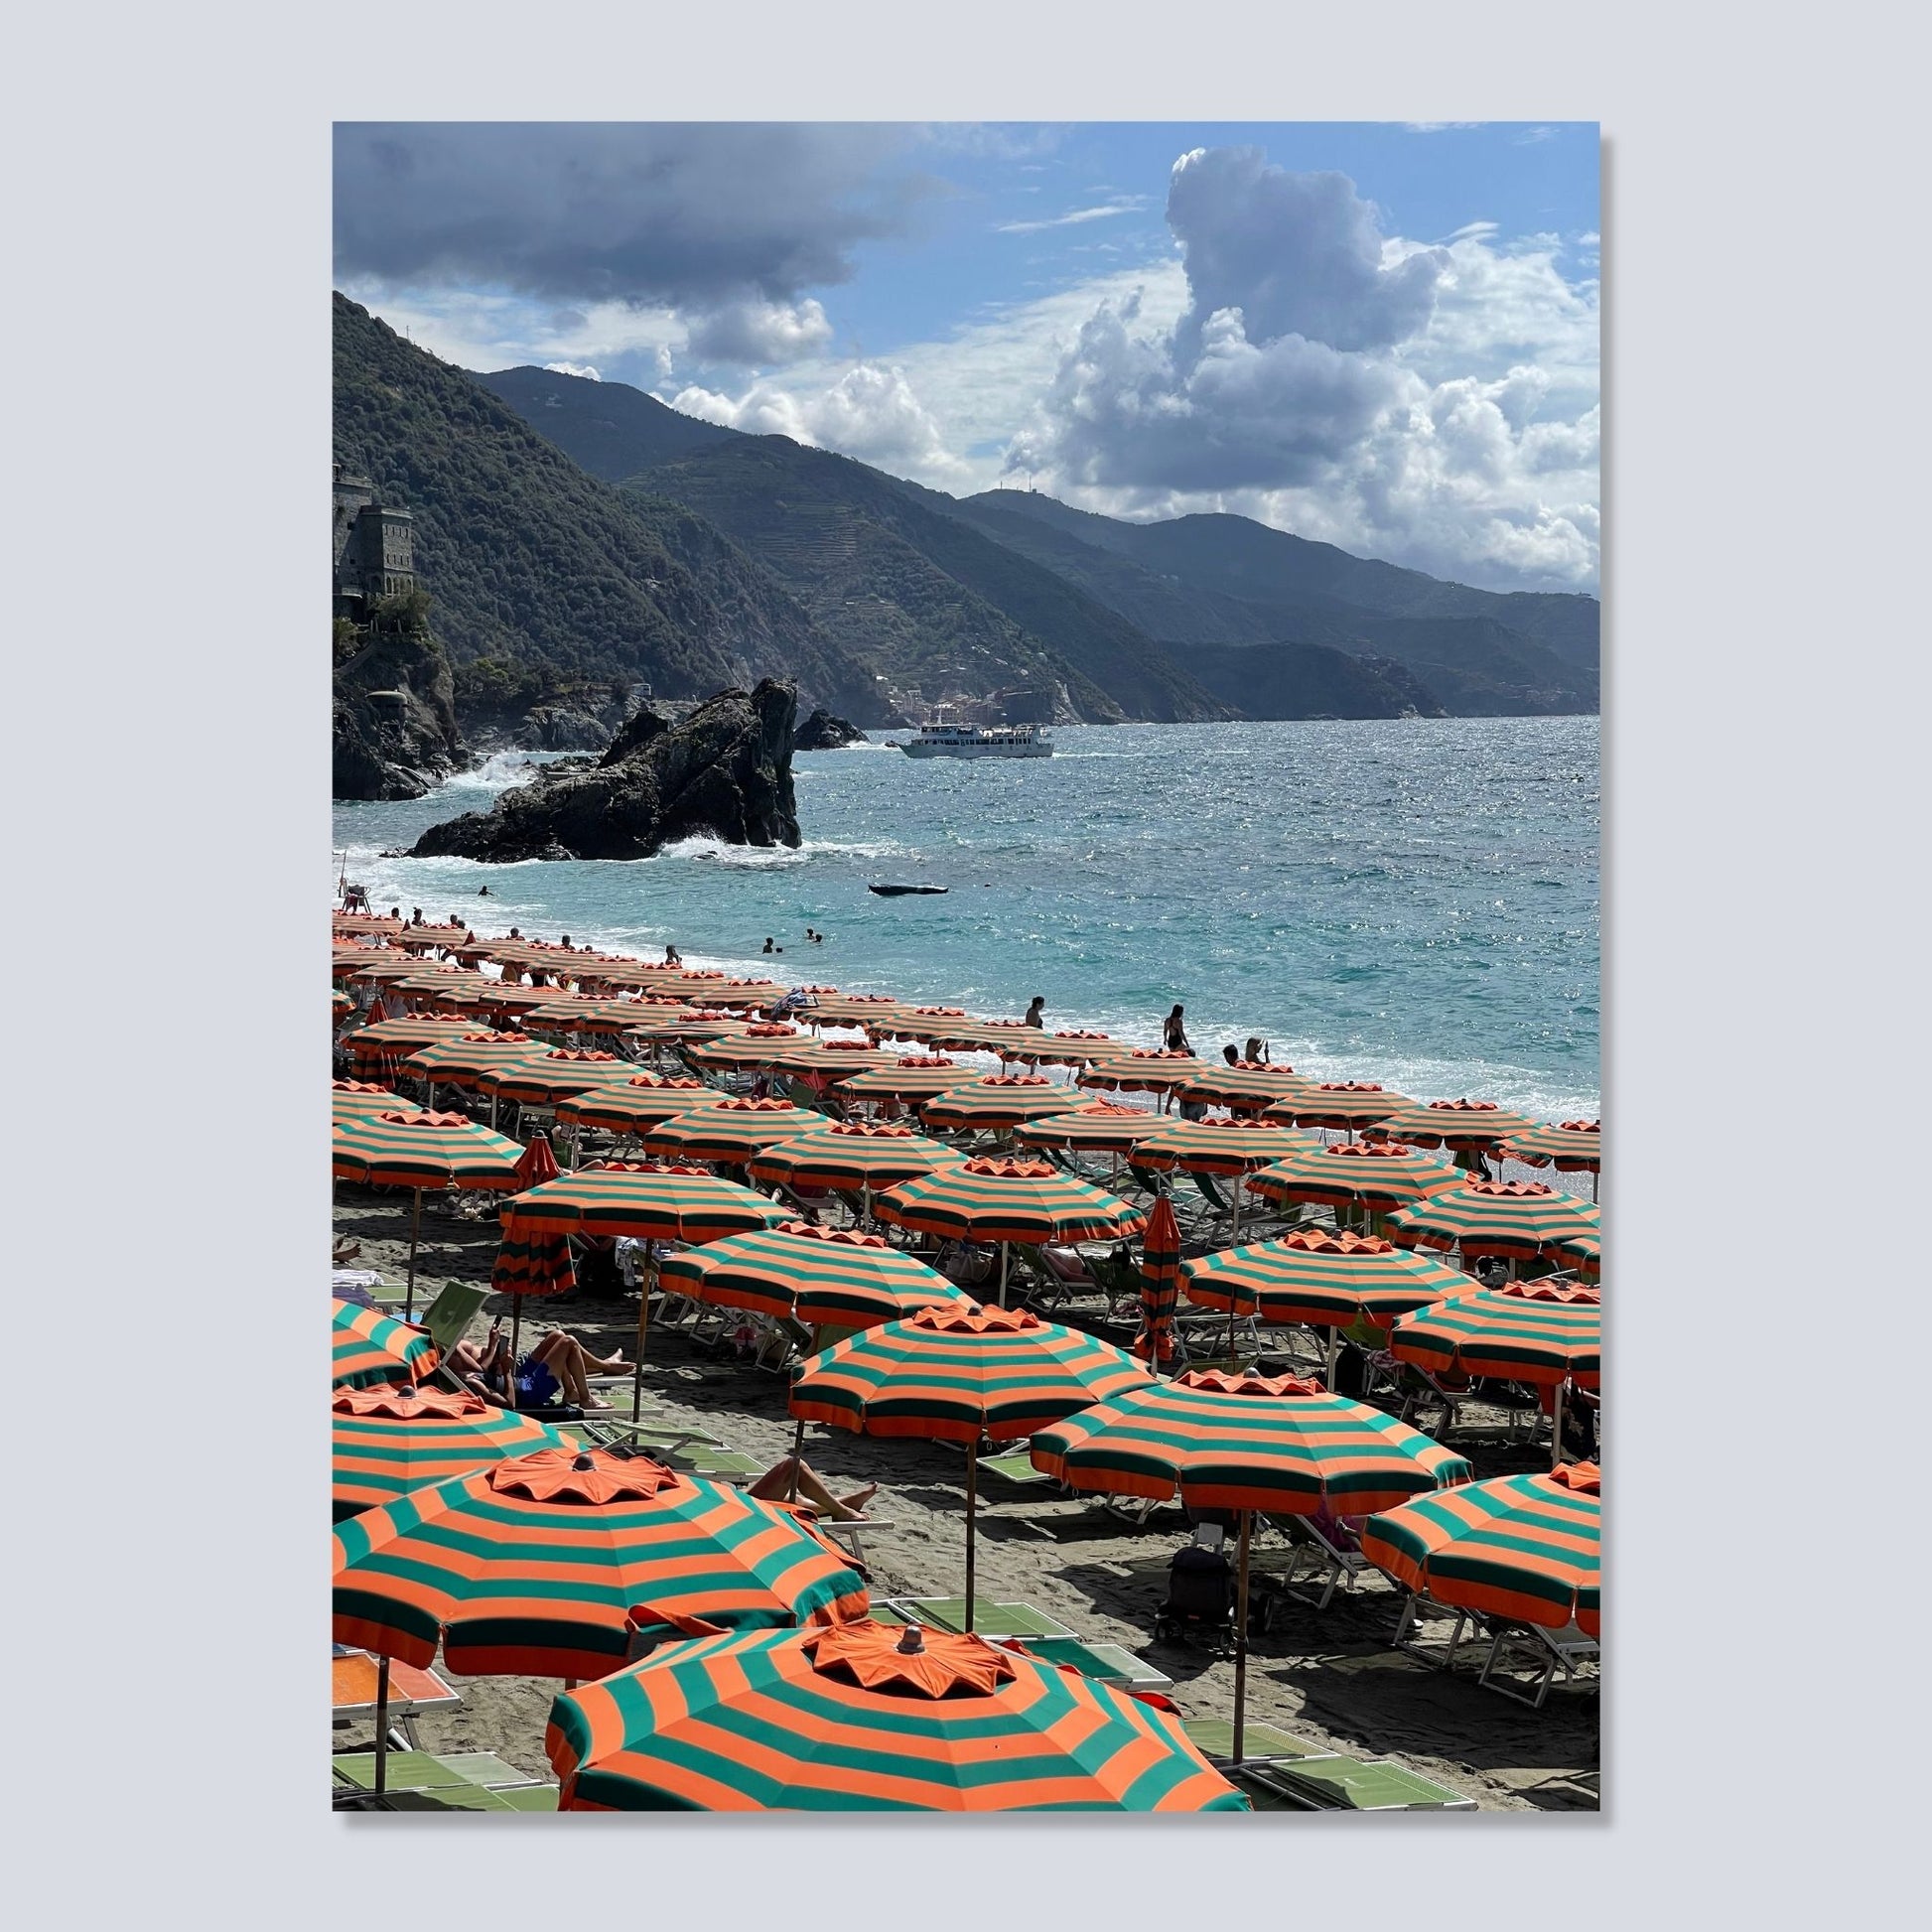 Plakaten viser den fine sandstranden ved Monterosso al Mare. De oransje og grønne parasollene som er "varemerke" for stranden, er systematisk satt opp i fem rekker. Himmelen er blå med noen skyer. Klippelandskapet mellom byenes går ned i havet til venstre på bildet. Plakaten er satt inn i sort ramme. Selve bildet har en hvit kant rundt. Bildet viser plakatmotivet på lerret.